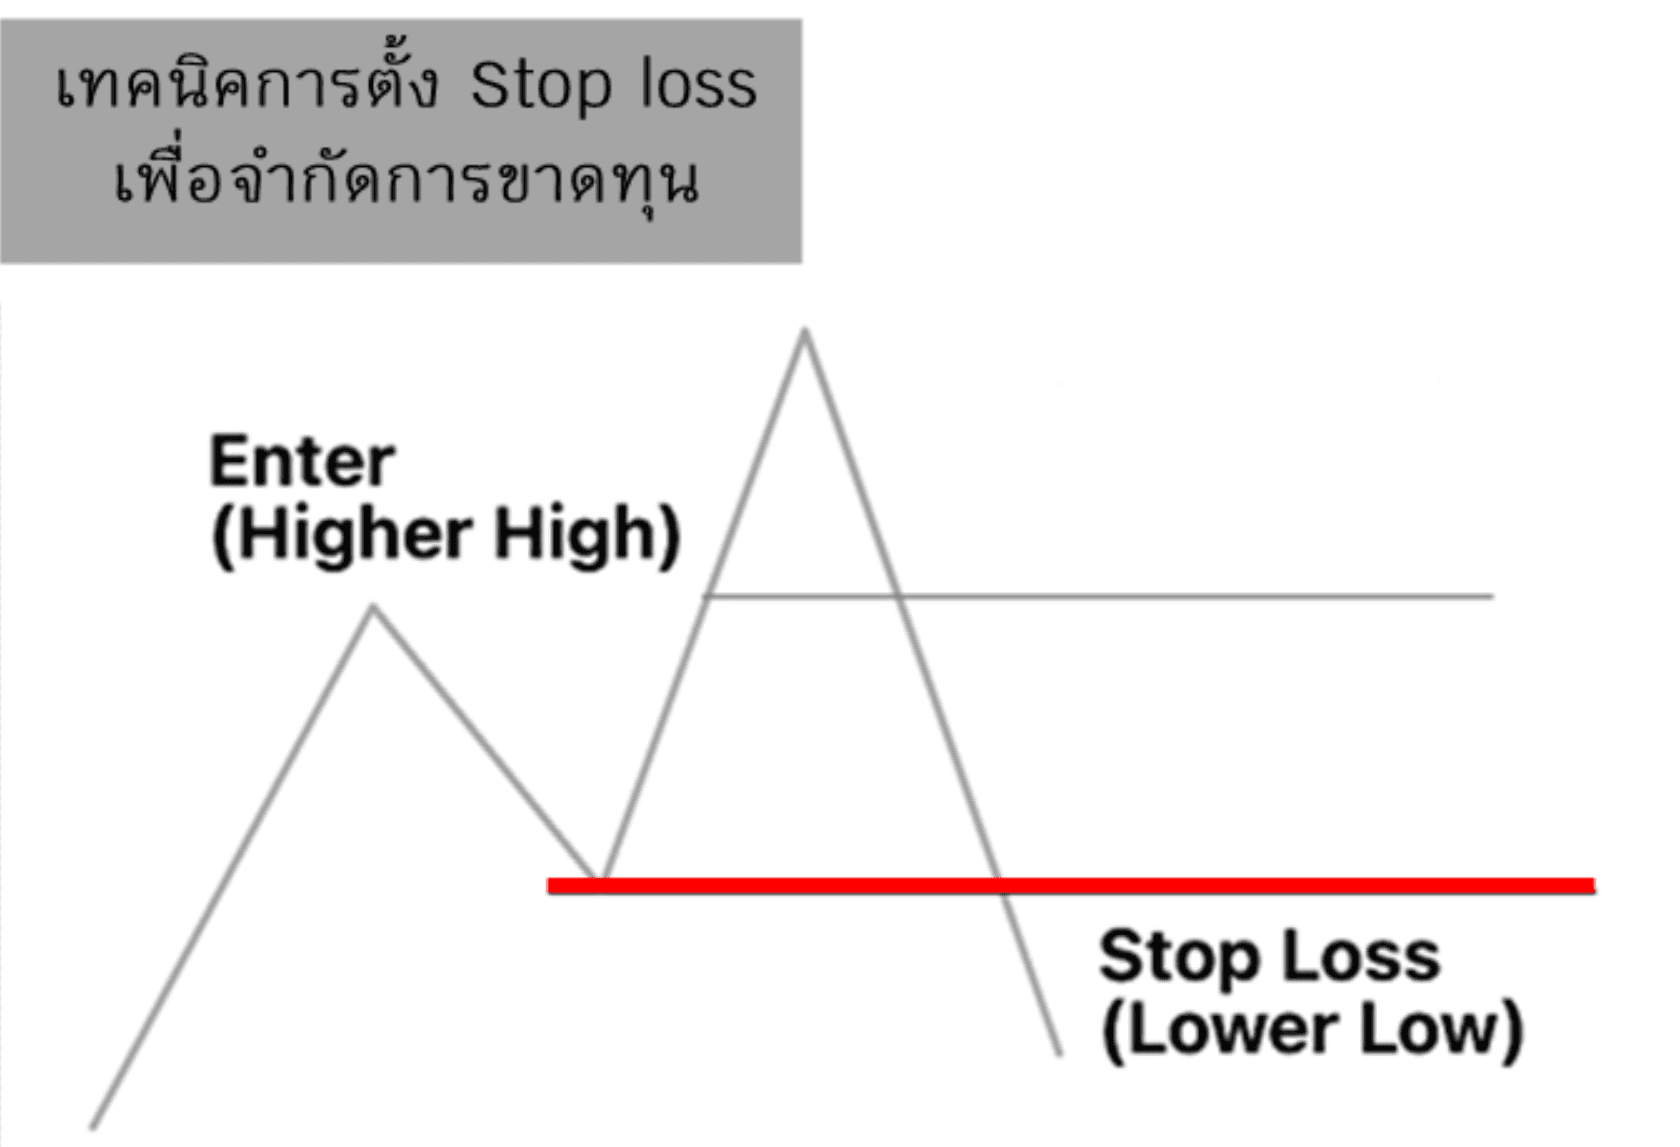 เทคนิคการตั้ง Stop loss เพื่อจำกัดการขาดทุน